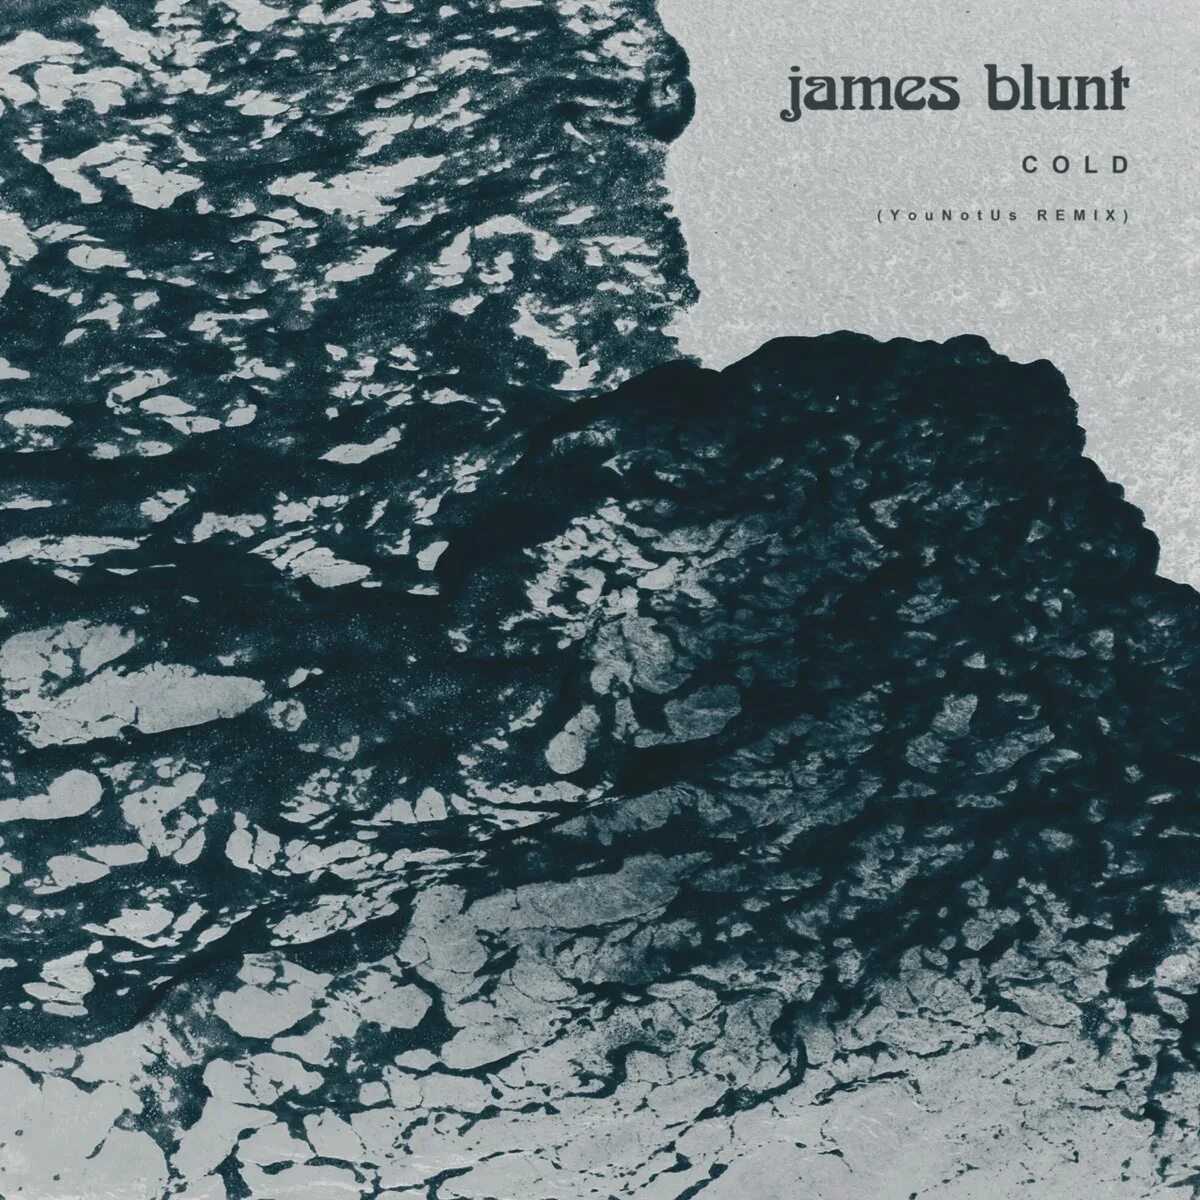 James Blunt - Cold. James Blunt альбомы. Cold обложки альбомов. James cold